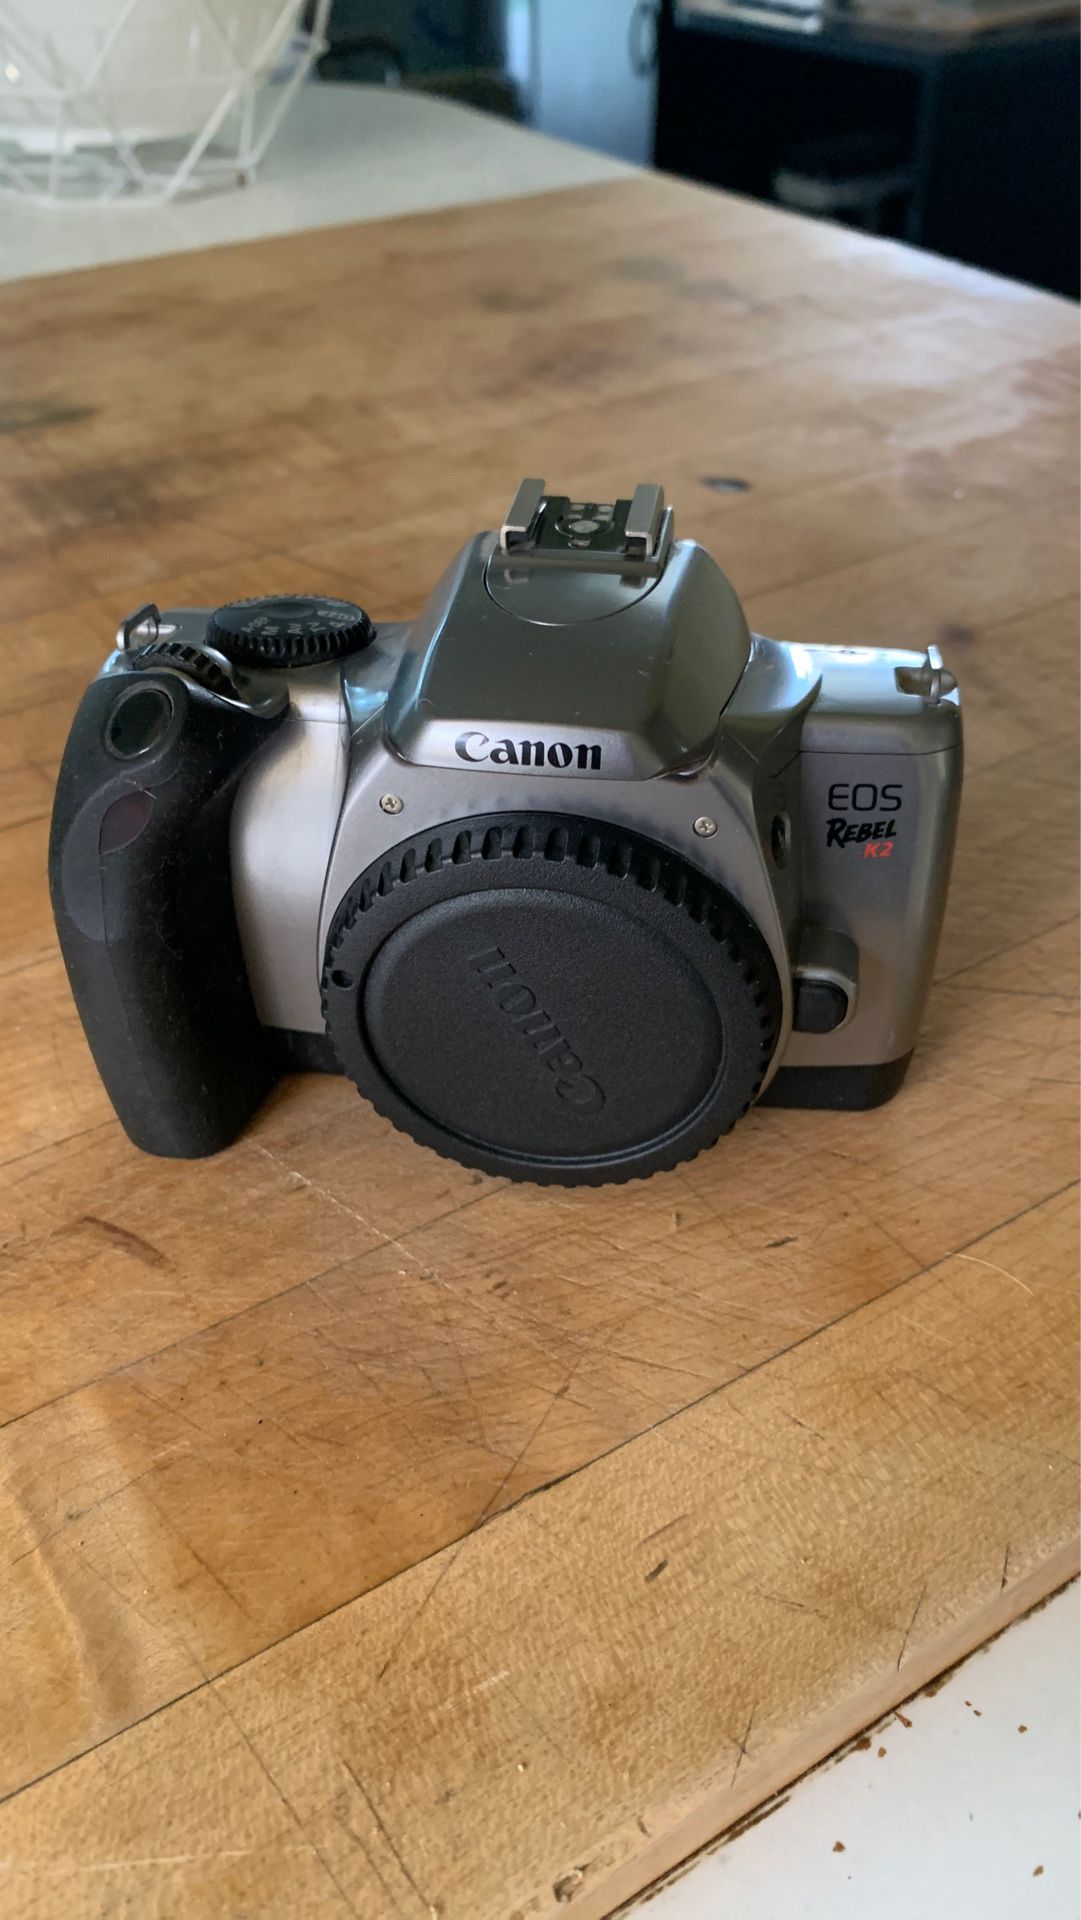 Canon EOS Rebel K2 film camera